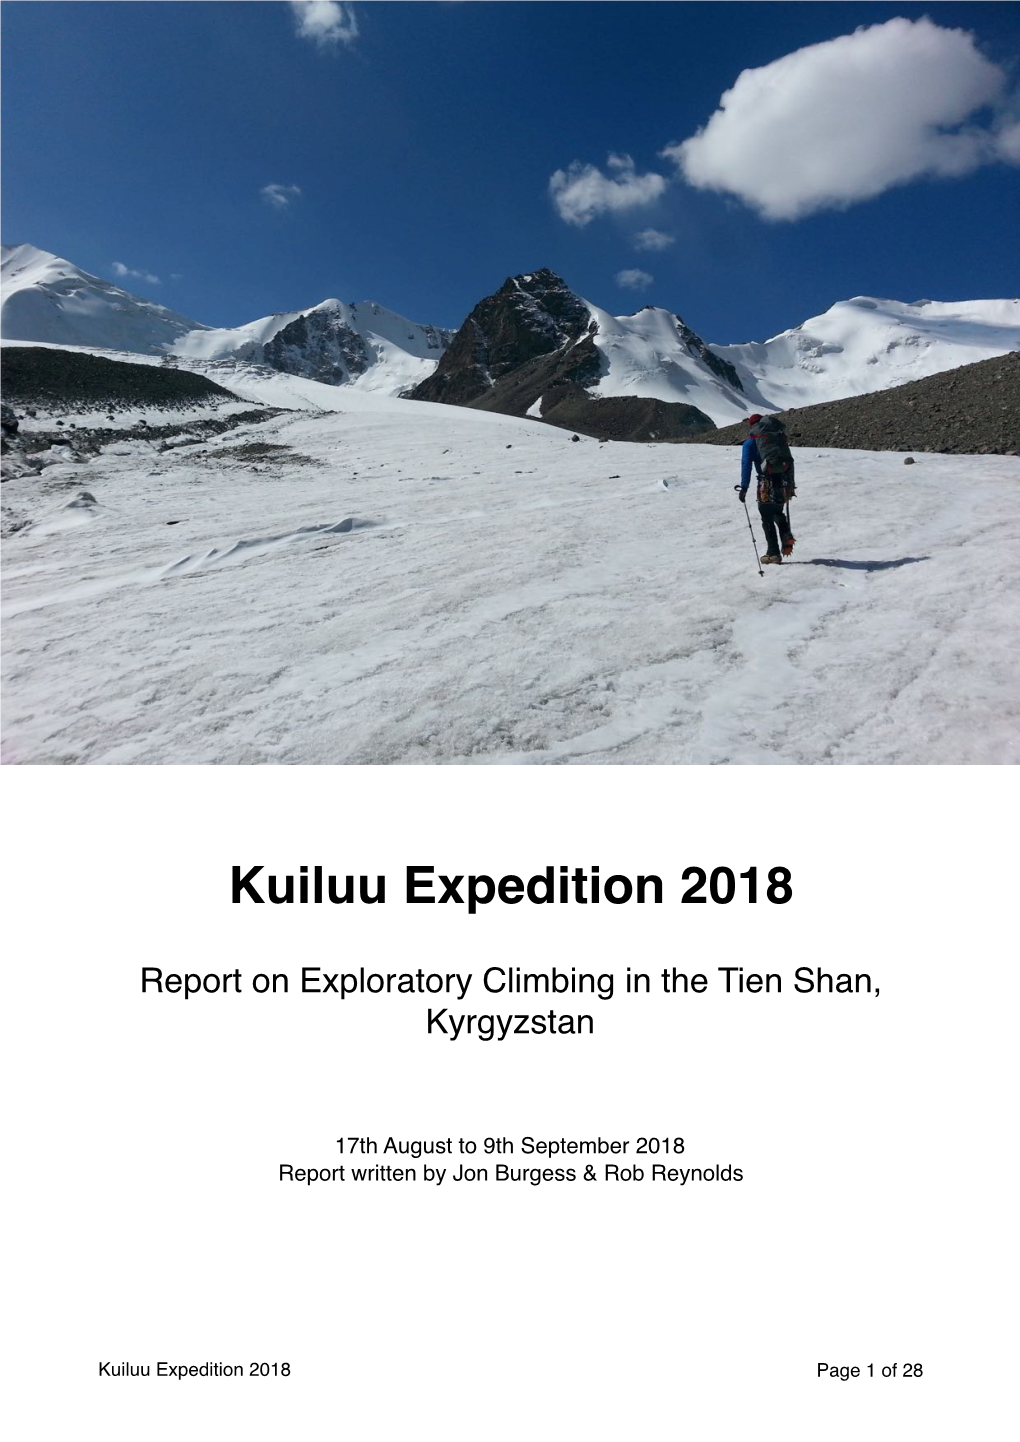 Kuiluu Expedition 2018